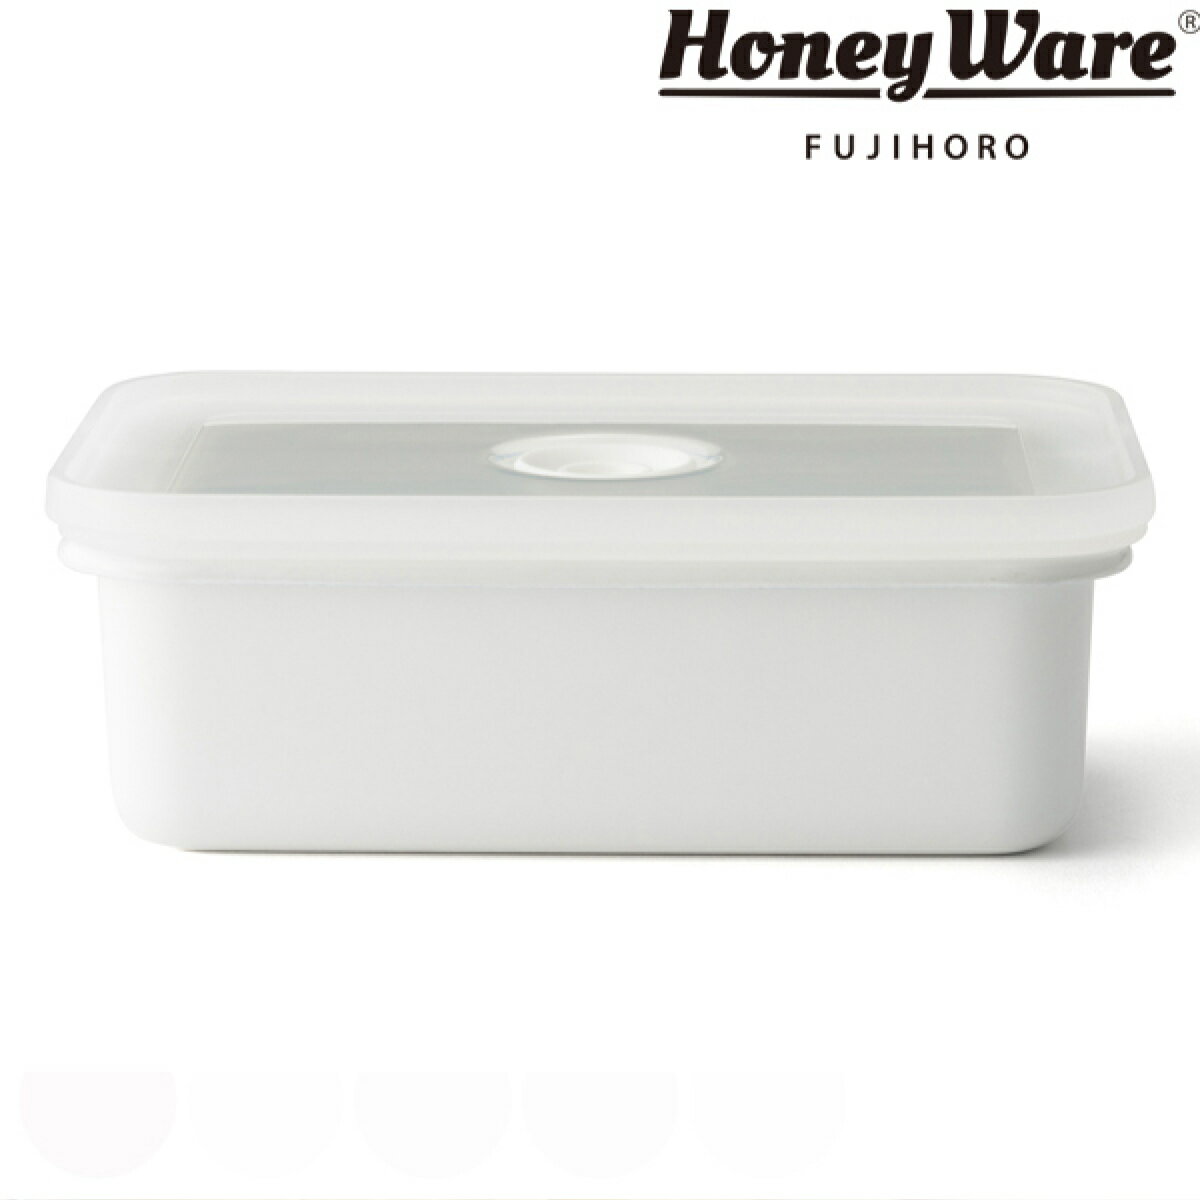 バターケース ホーロー製 450g HoneyWare 富士ホーロー （ バター容器 バター保存 バター用ケース 保存容器 ホーロー容器 琺瑯容器 琺瑯製品 角型容器 スクエア フードコンテナ 食品保存 おしゃれ ハニーウェア ）